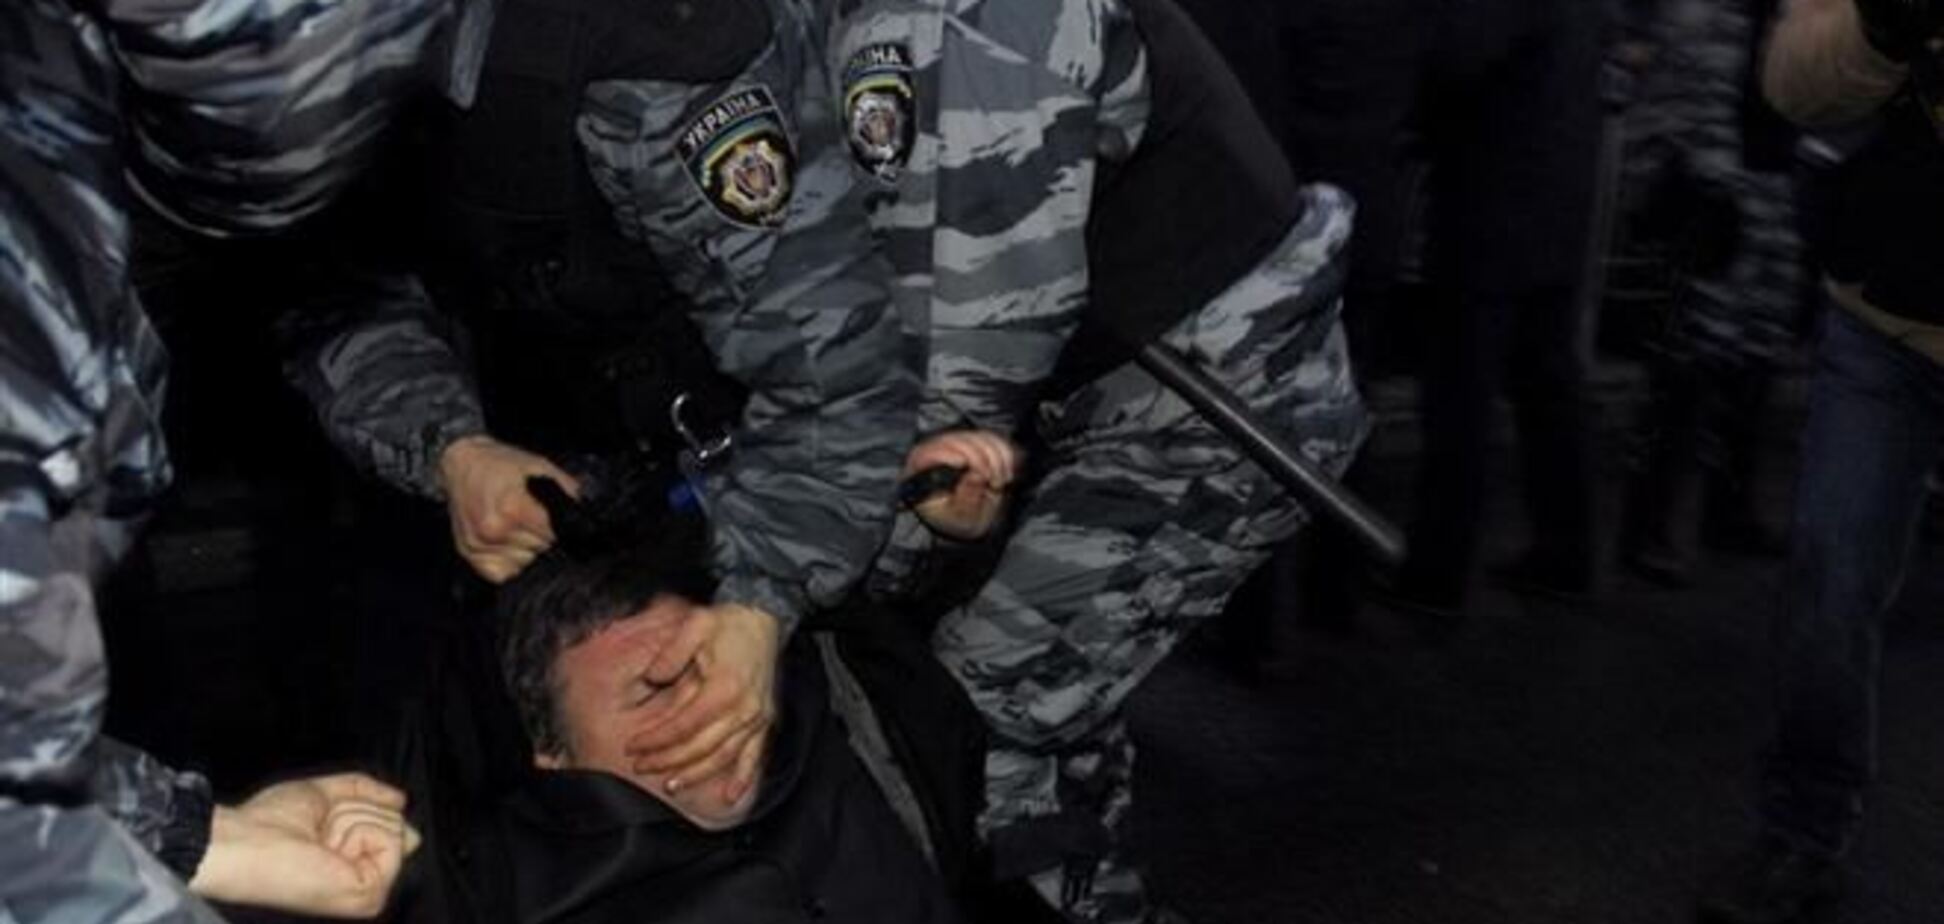 Подозреваемым в разгоне Евромайдана стал командир 'Беркута', - СМИ